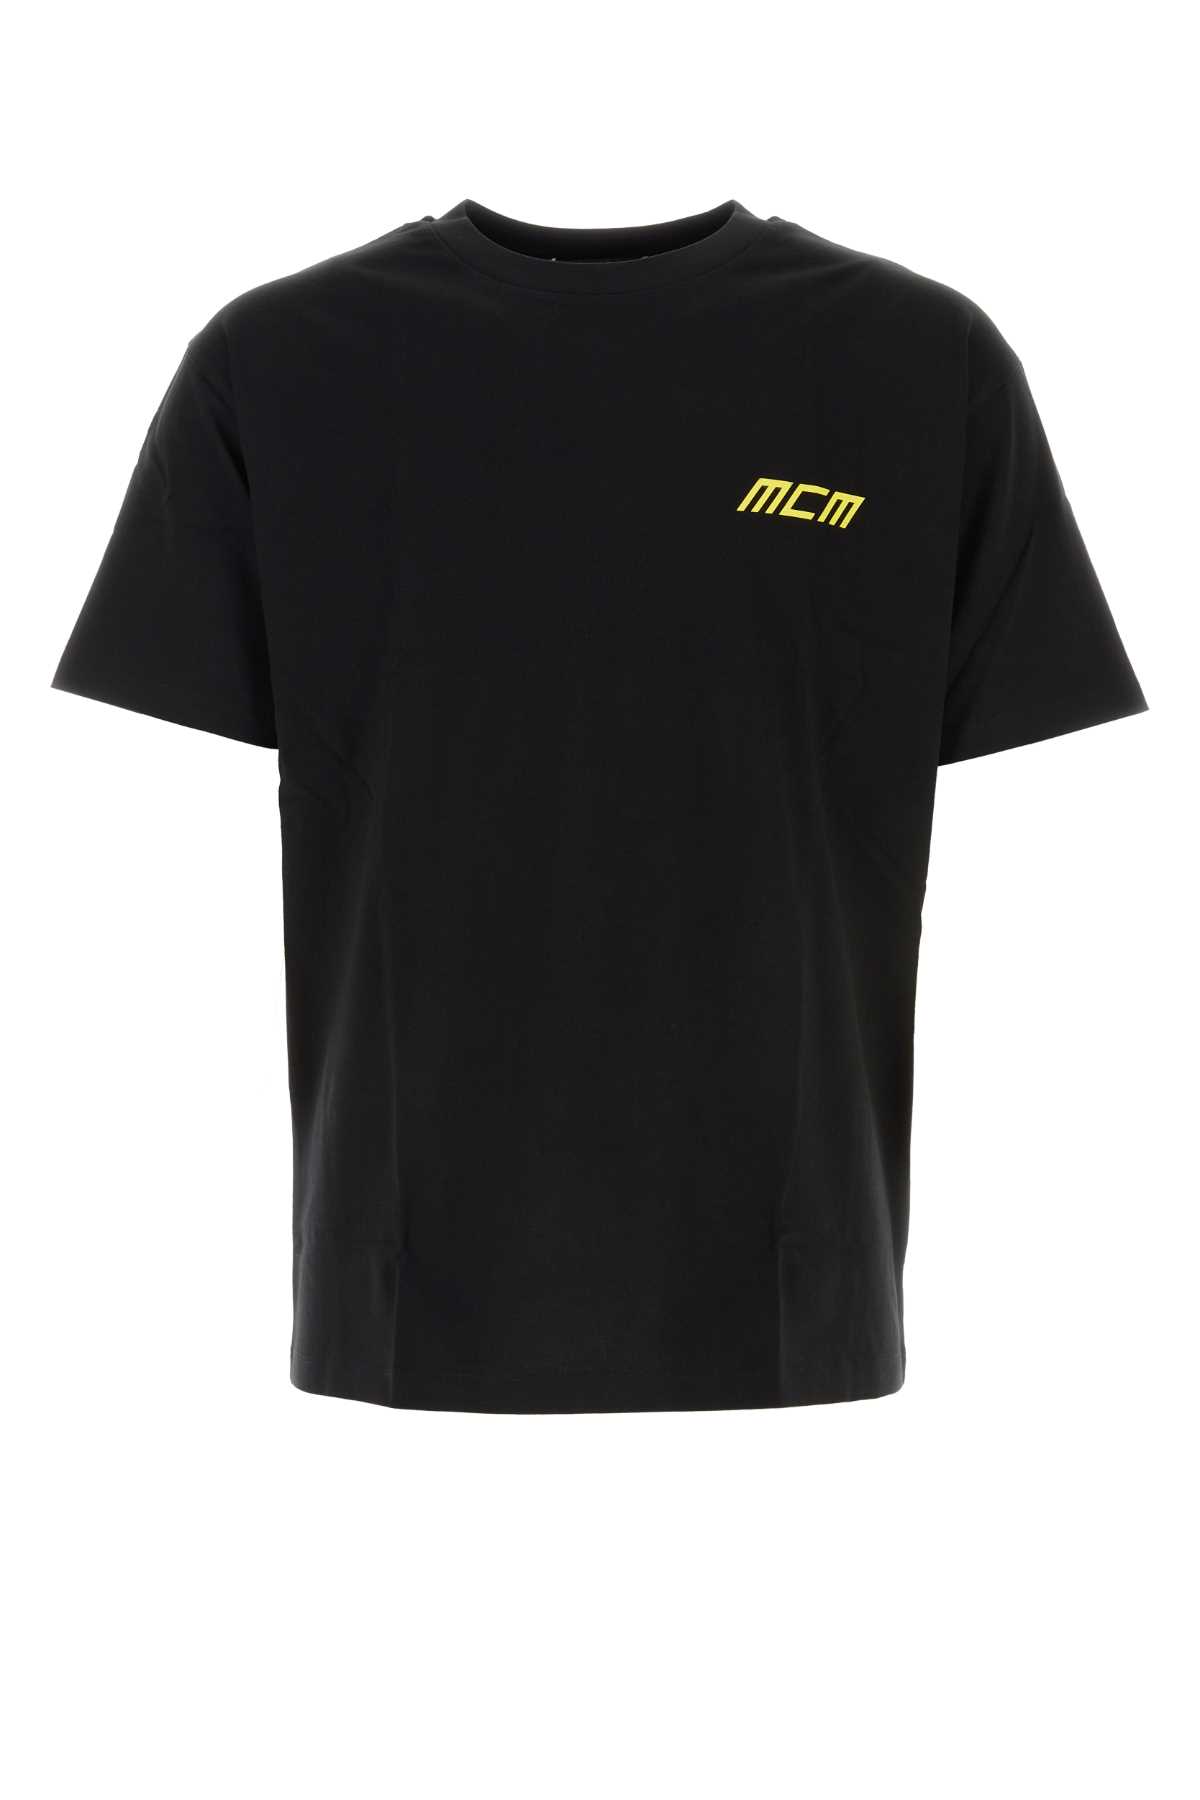 MCM Black Cotton Oversize T-shirt